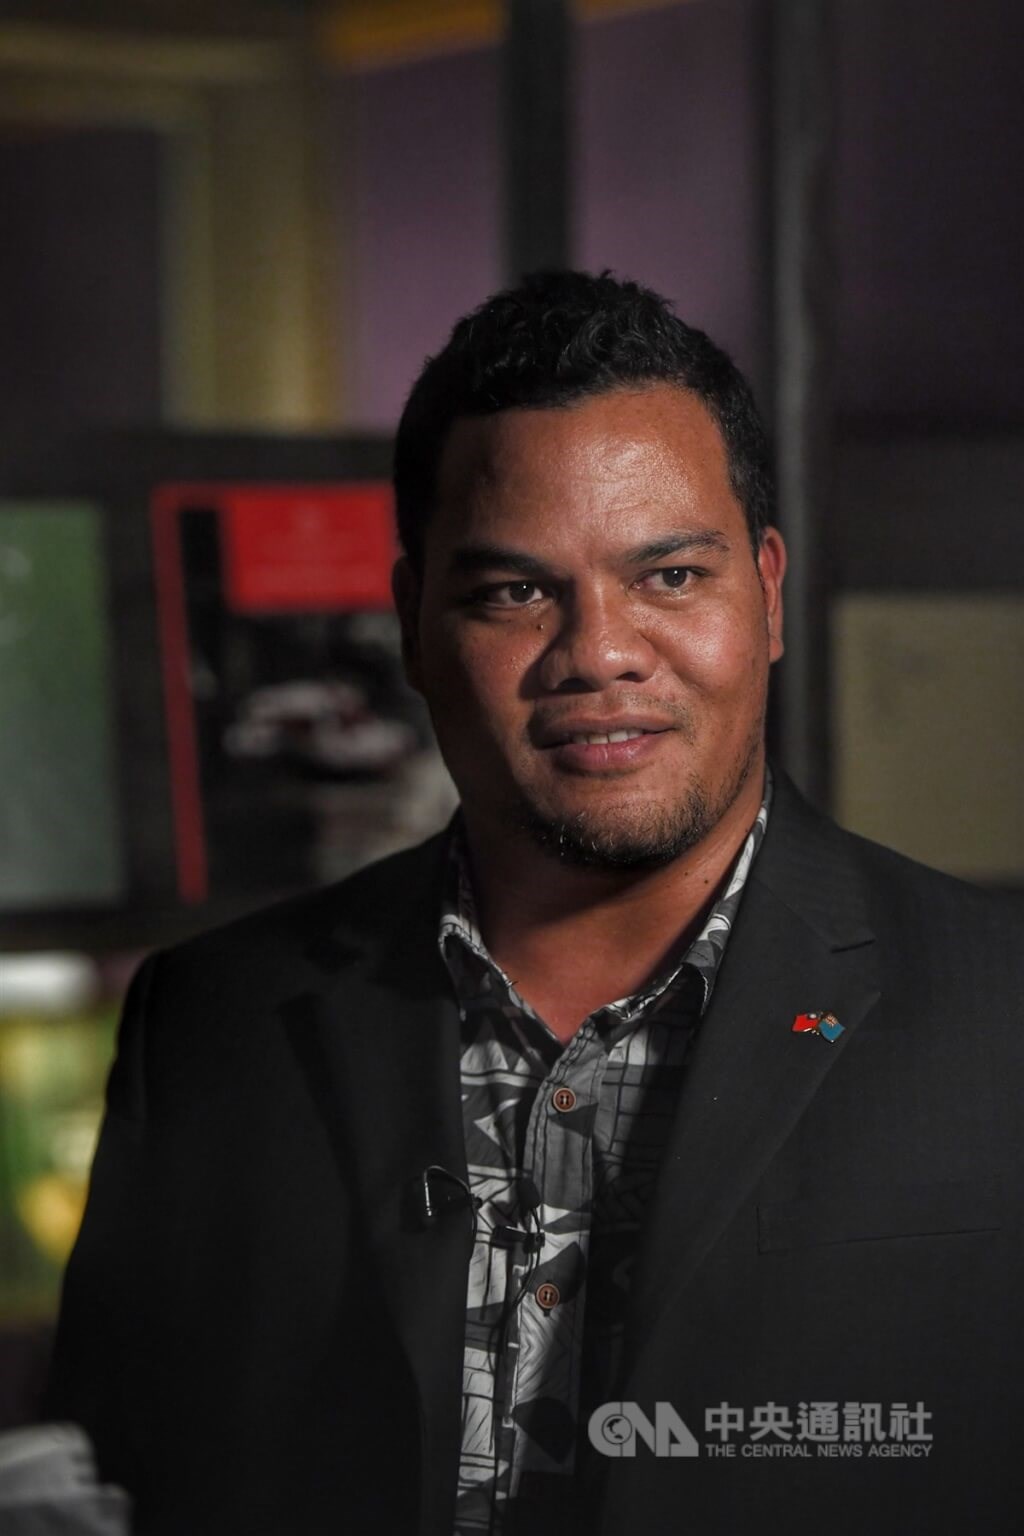 Tuvalu Foreign Minister Simon Kofe. CNA file photo